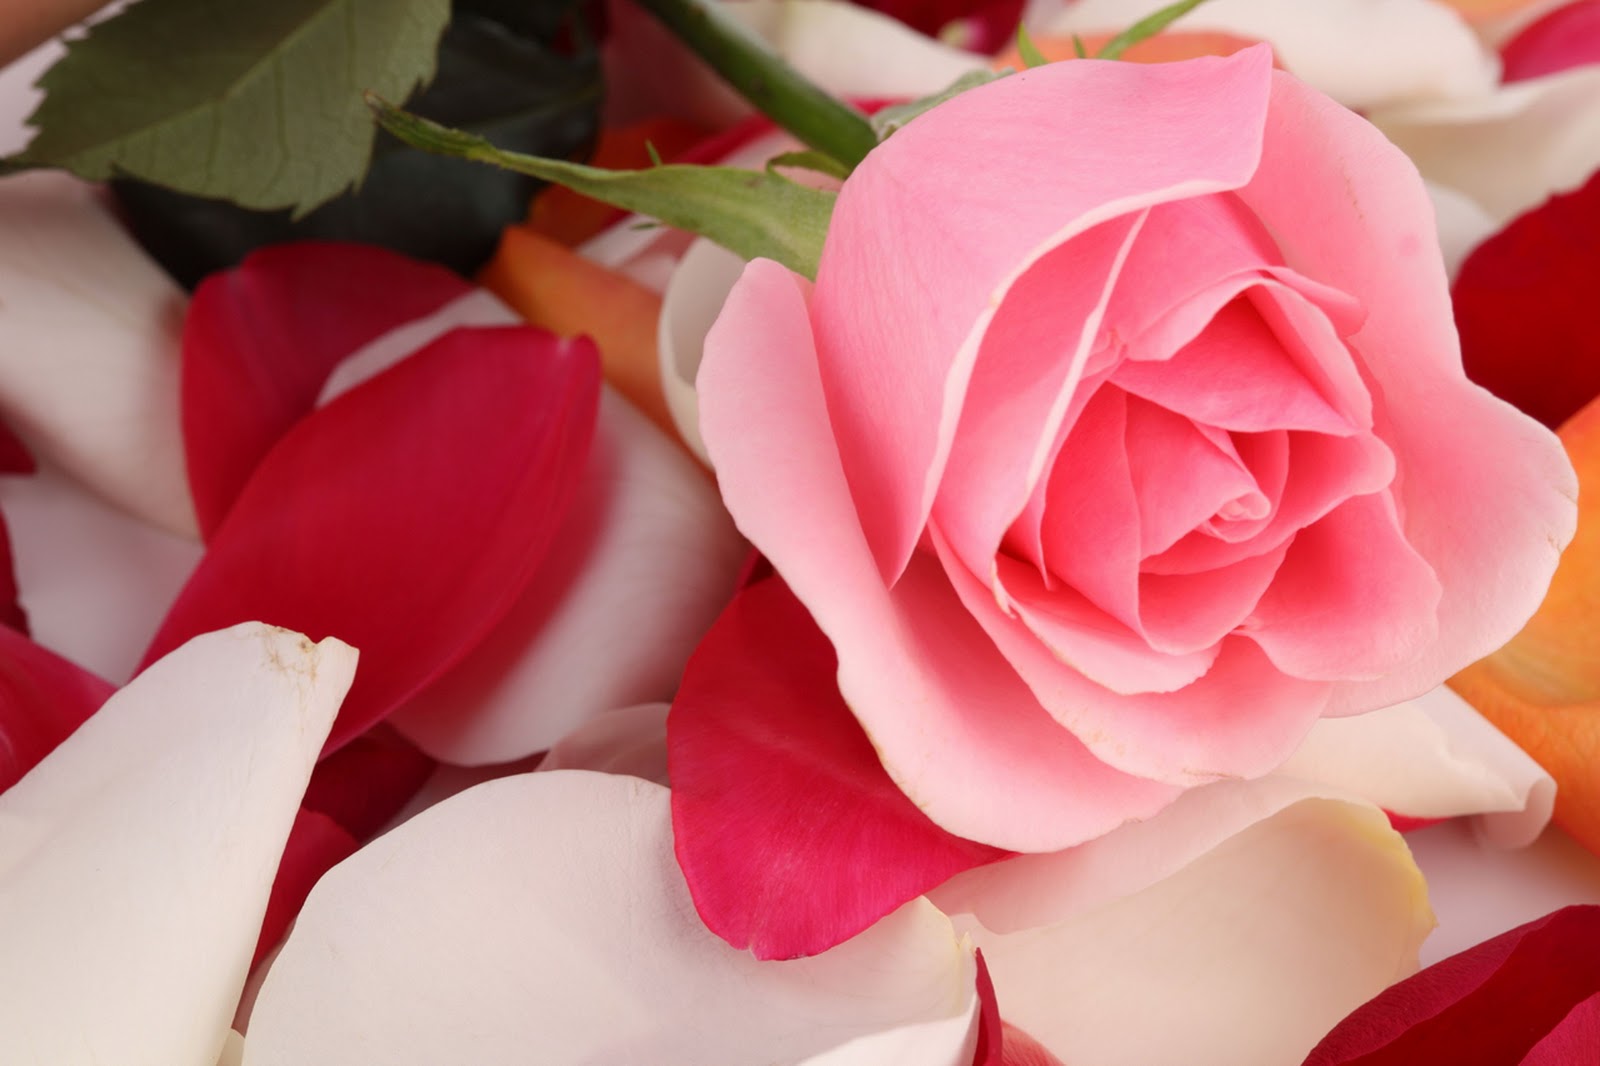  Gambar  Bunga  Mawar yang Cantik Cantik